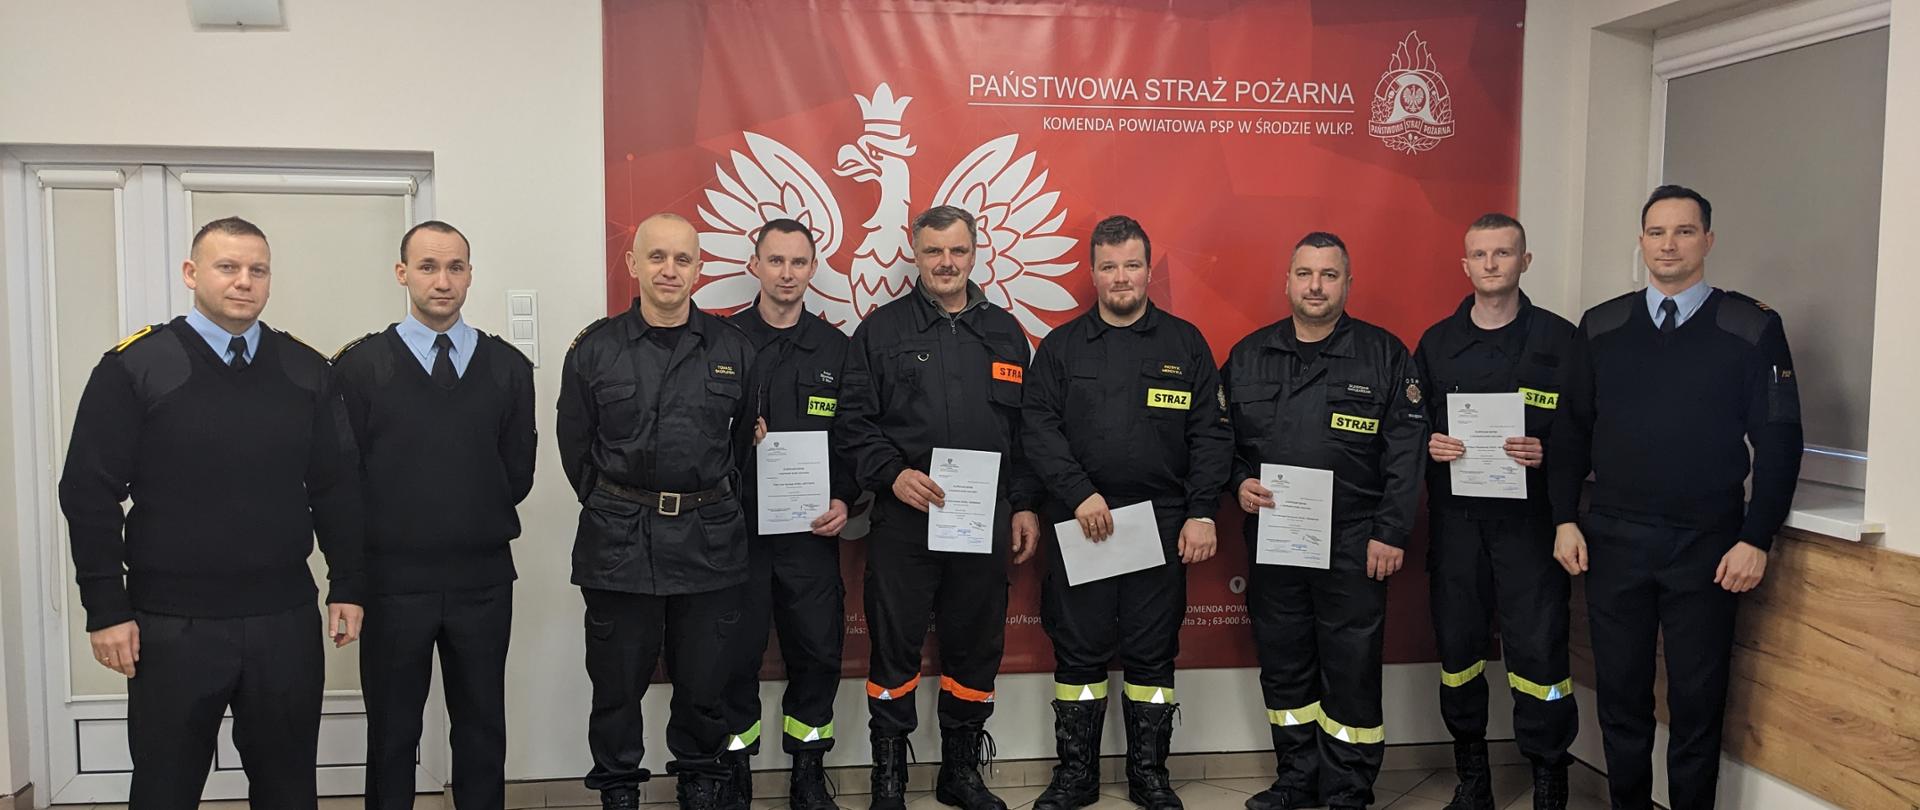 Członkowie komisji egzaminacyjnej wraz z Komendantem Powiatowym PSP w Środzie Wielkopolskiej oraz ratownikami KPP po zdaniu egzaminu recertyfikacyjnego